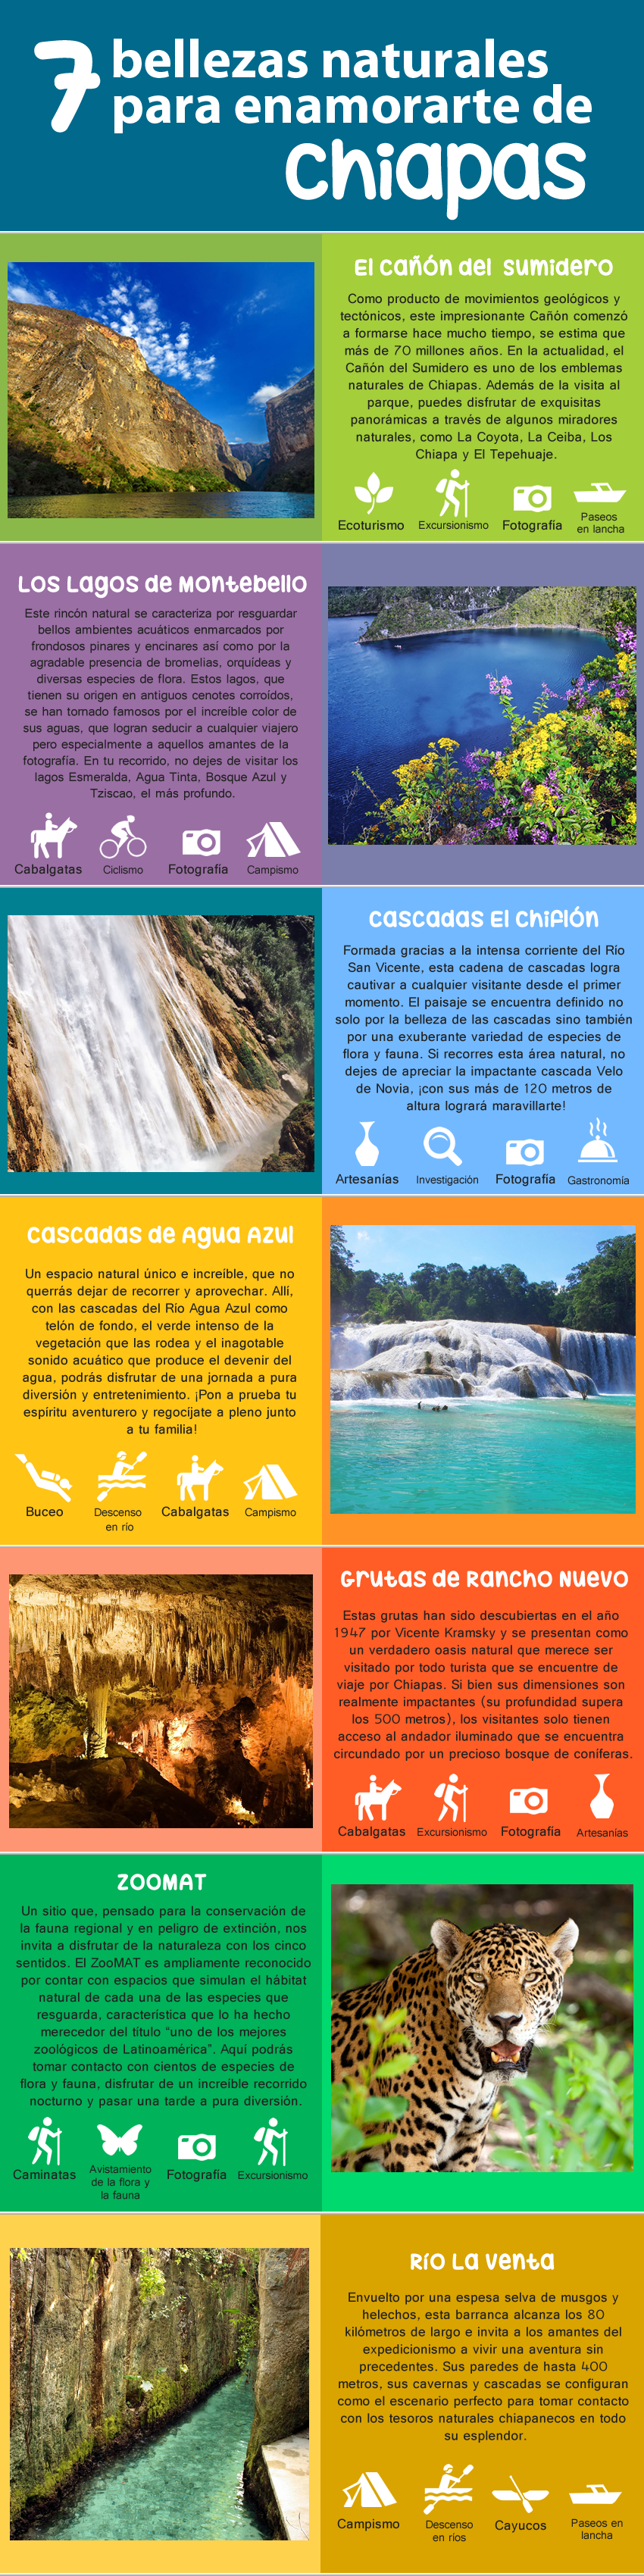 7 bellezas naturales para enamorarte de Chiapas - Diario Viajero Mexico Google+